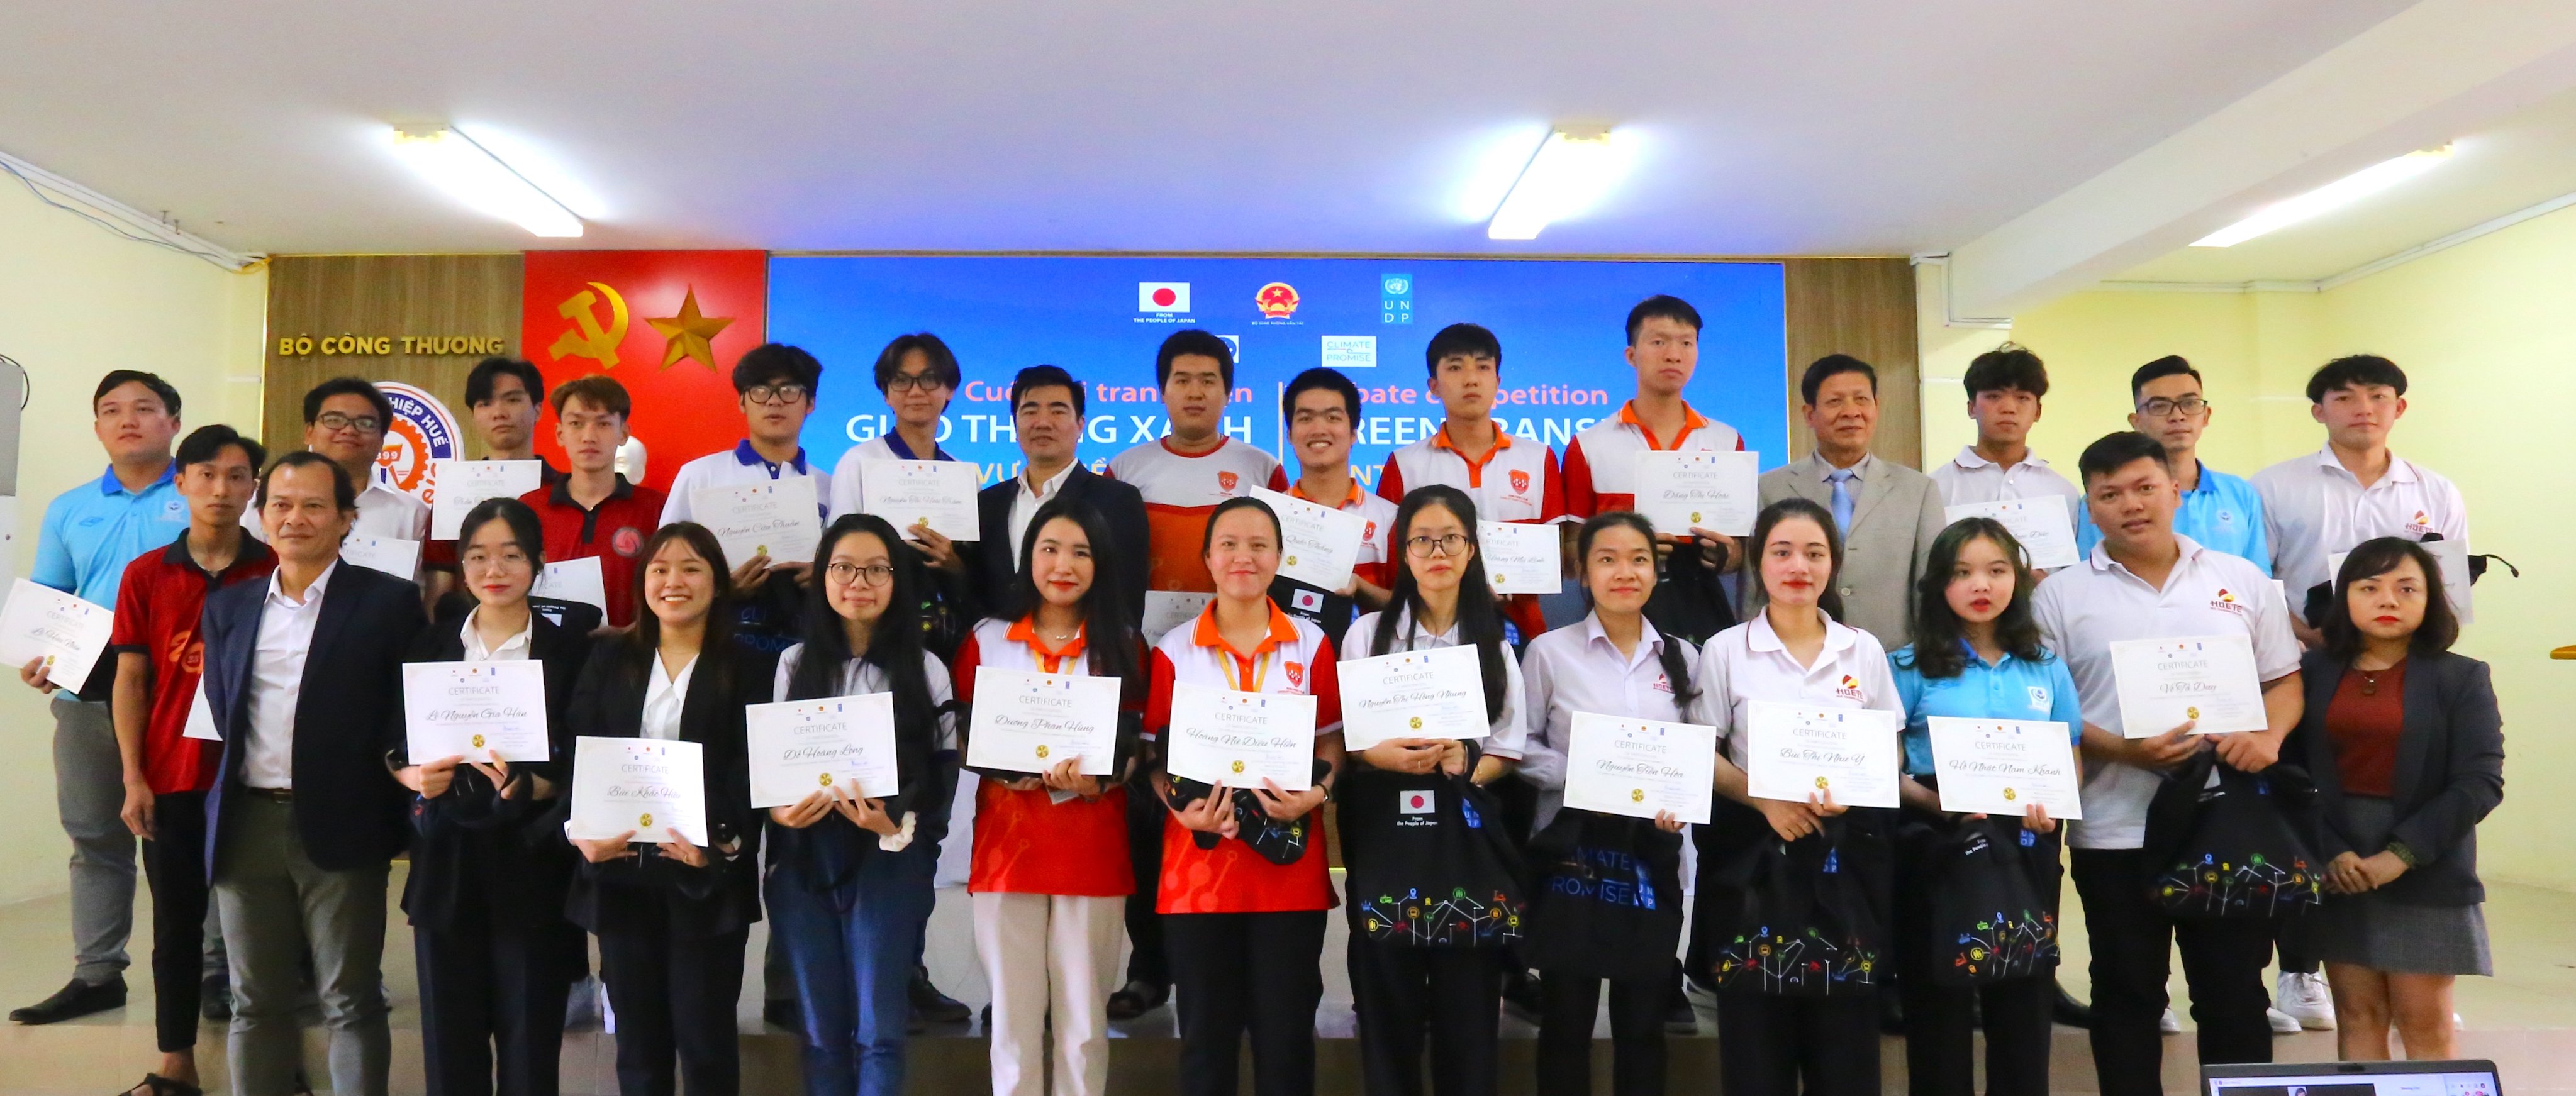 Các cử nhân Công nghệ thông tin đứng đầu Vòng miền Trung Cuộc thi Tranh biện Giao thông Xanh